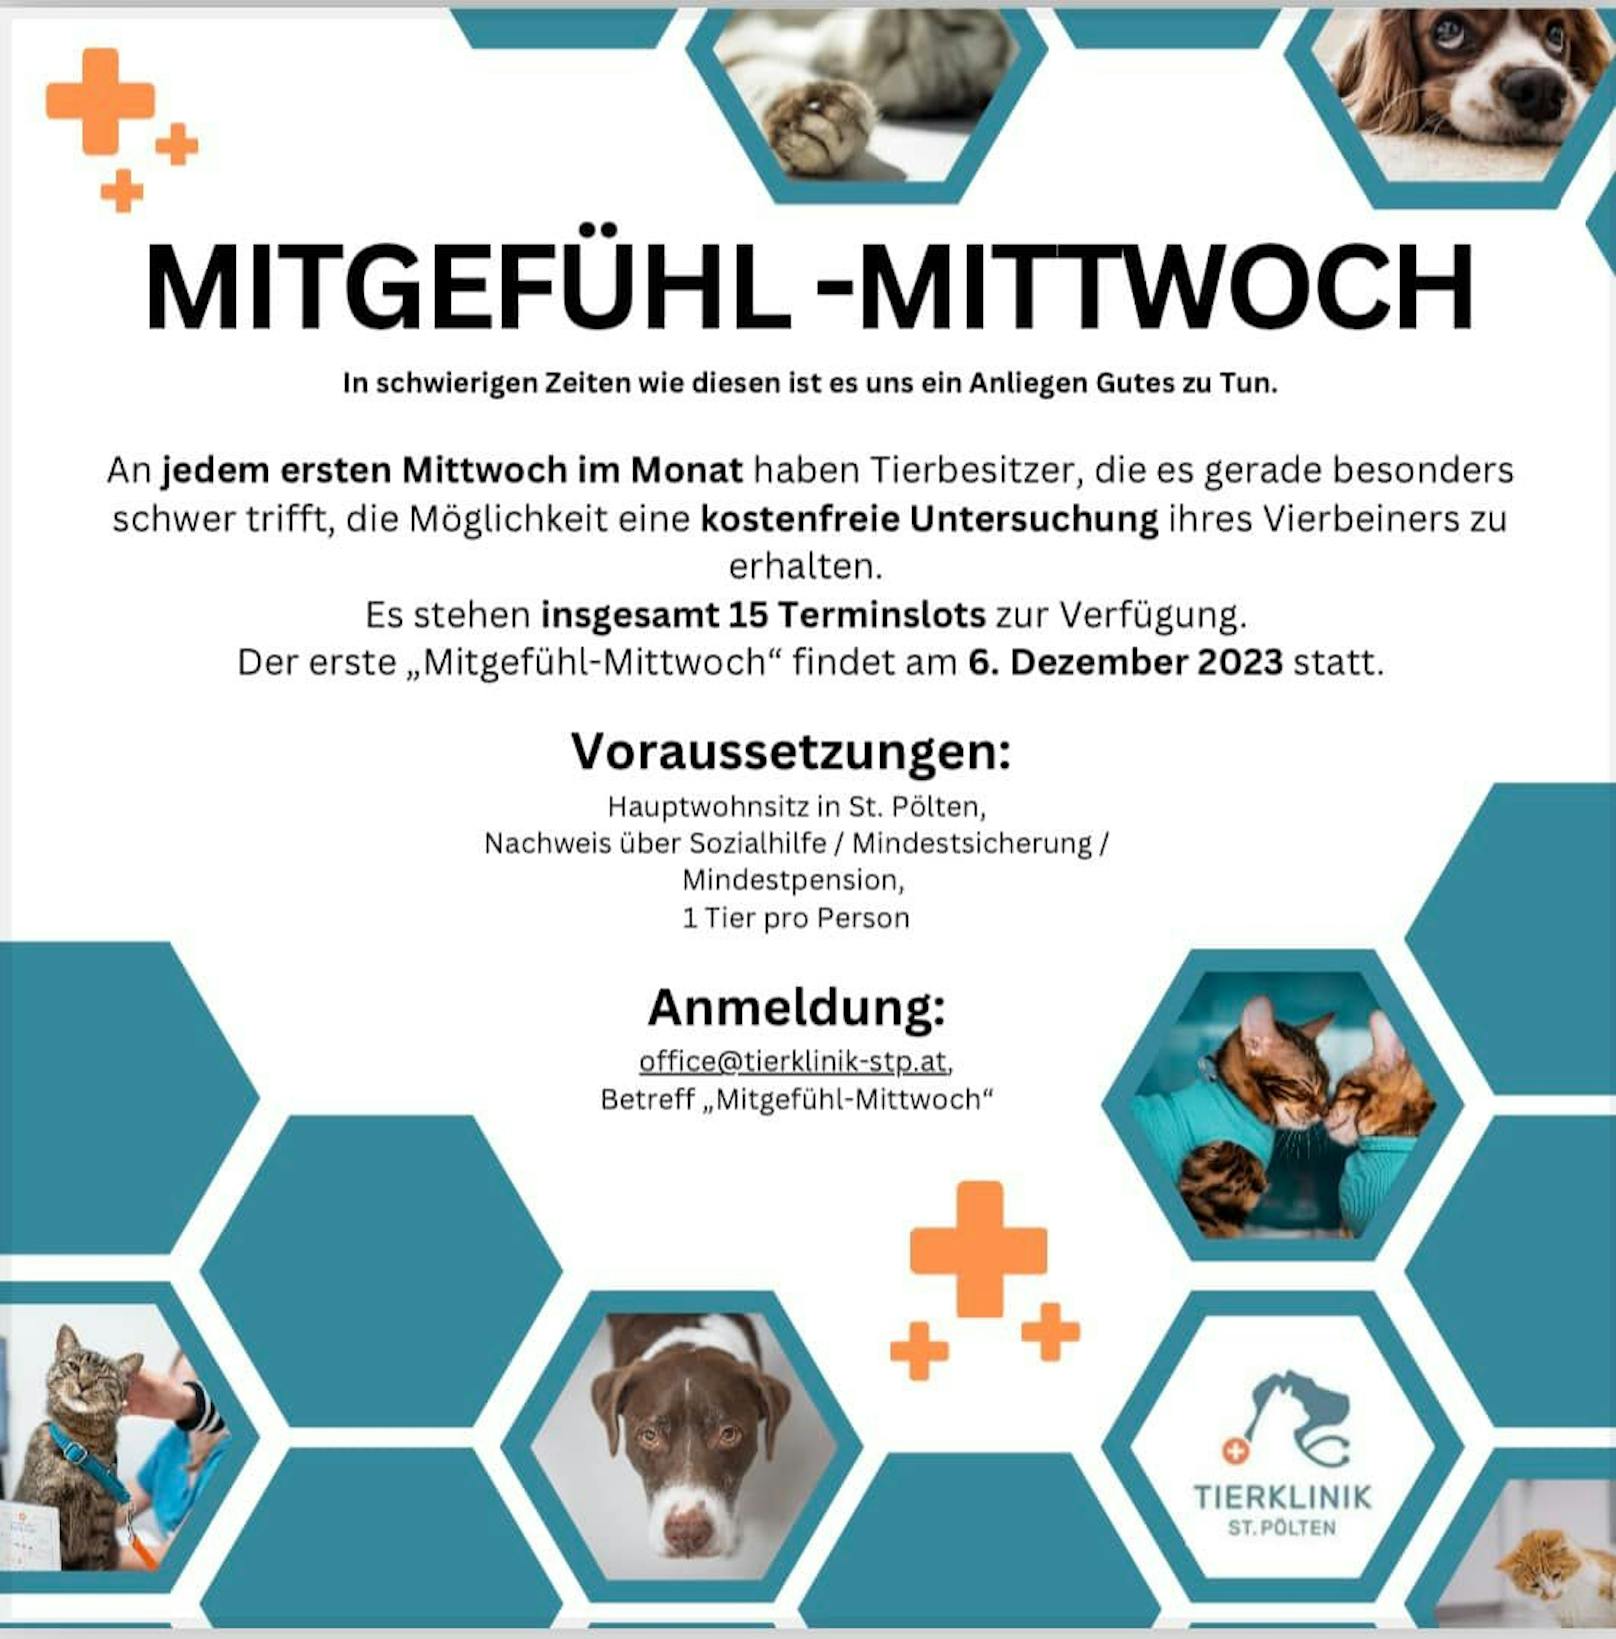 "Mitgefühl-Mittwoch" - eine neue Aktion in der Tierklinik St. Pölten.